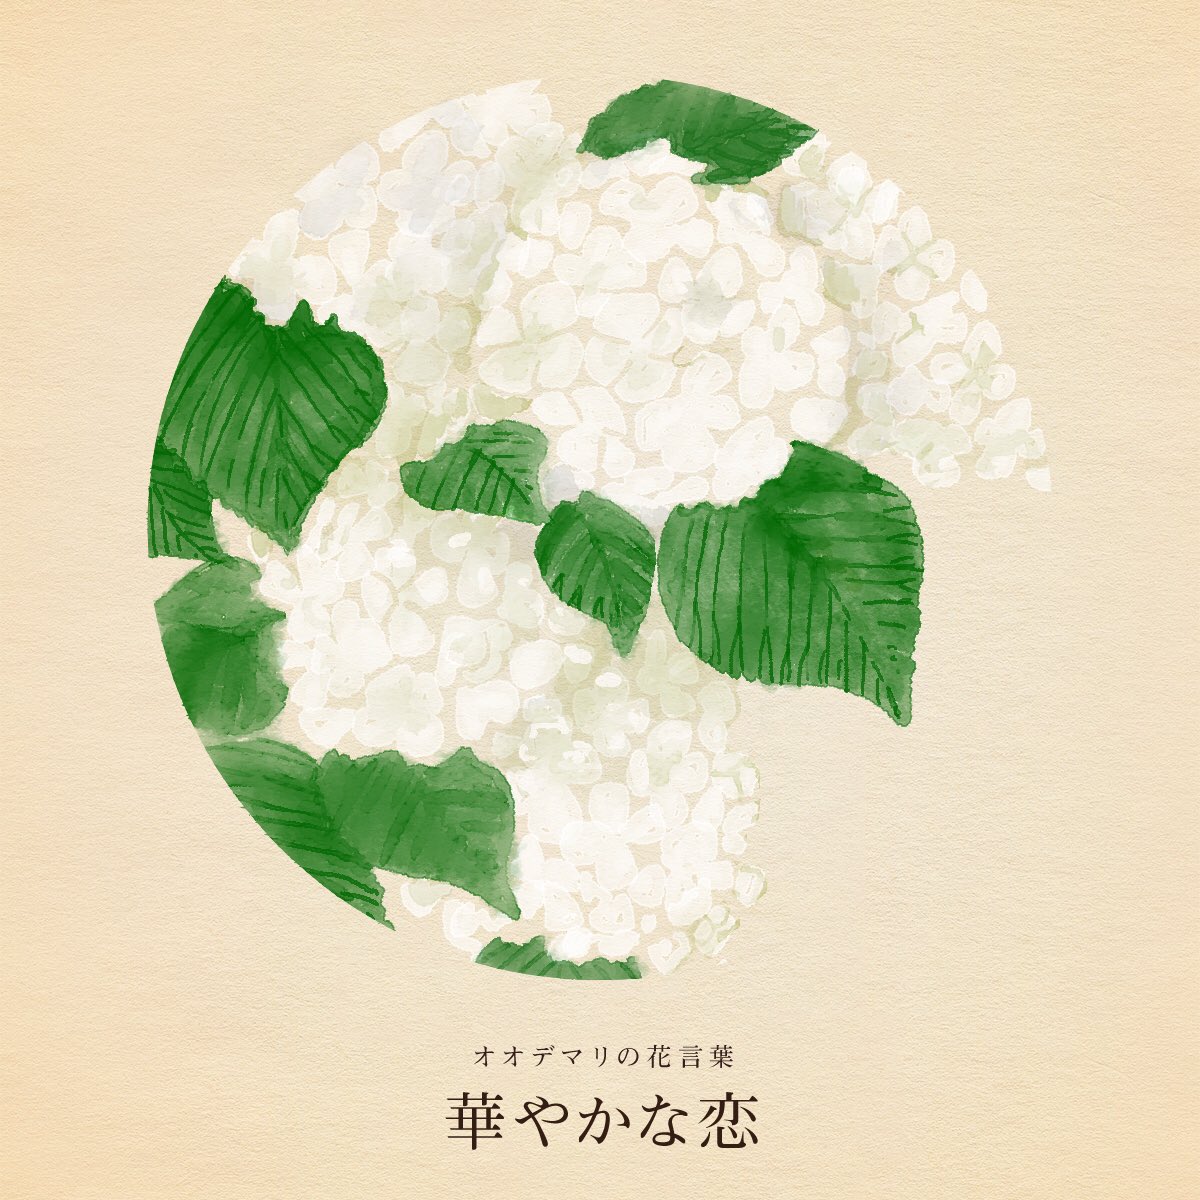 きょう5月27日は
日本海海戦の日
百人一首の日
背骨の日
小松菜の日
ドラゴンクエストの日

誕生花はオオデマリ
花言葉「華やかな恋」